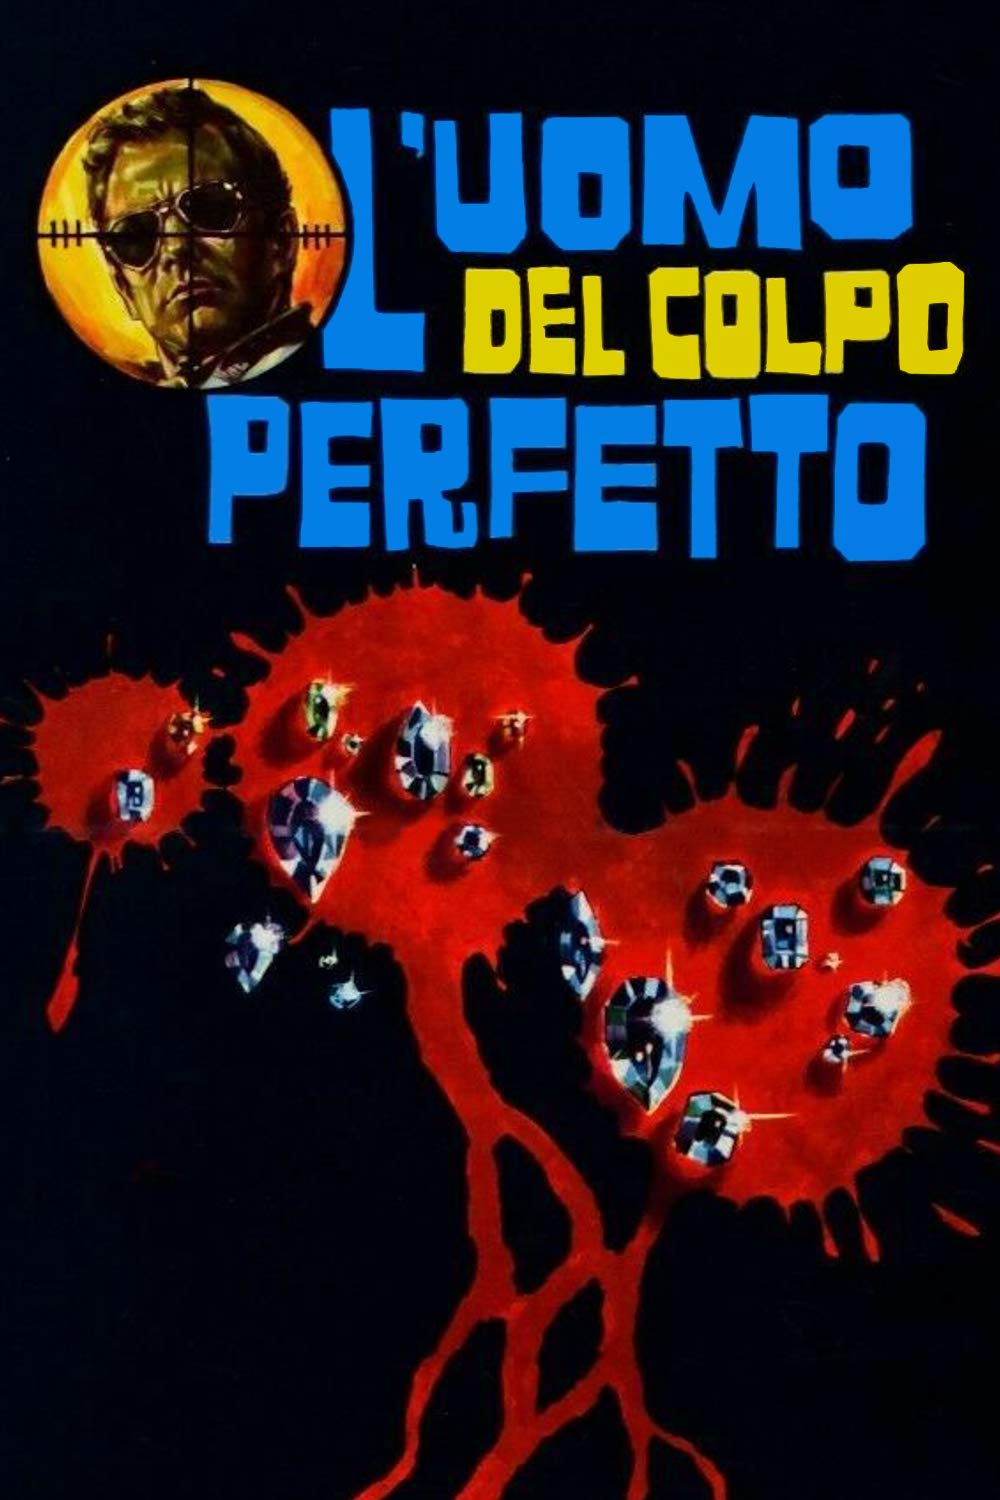 L’uomo del colpo perfetto (1967)